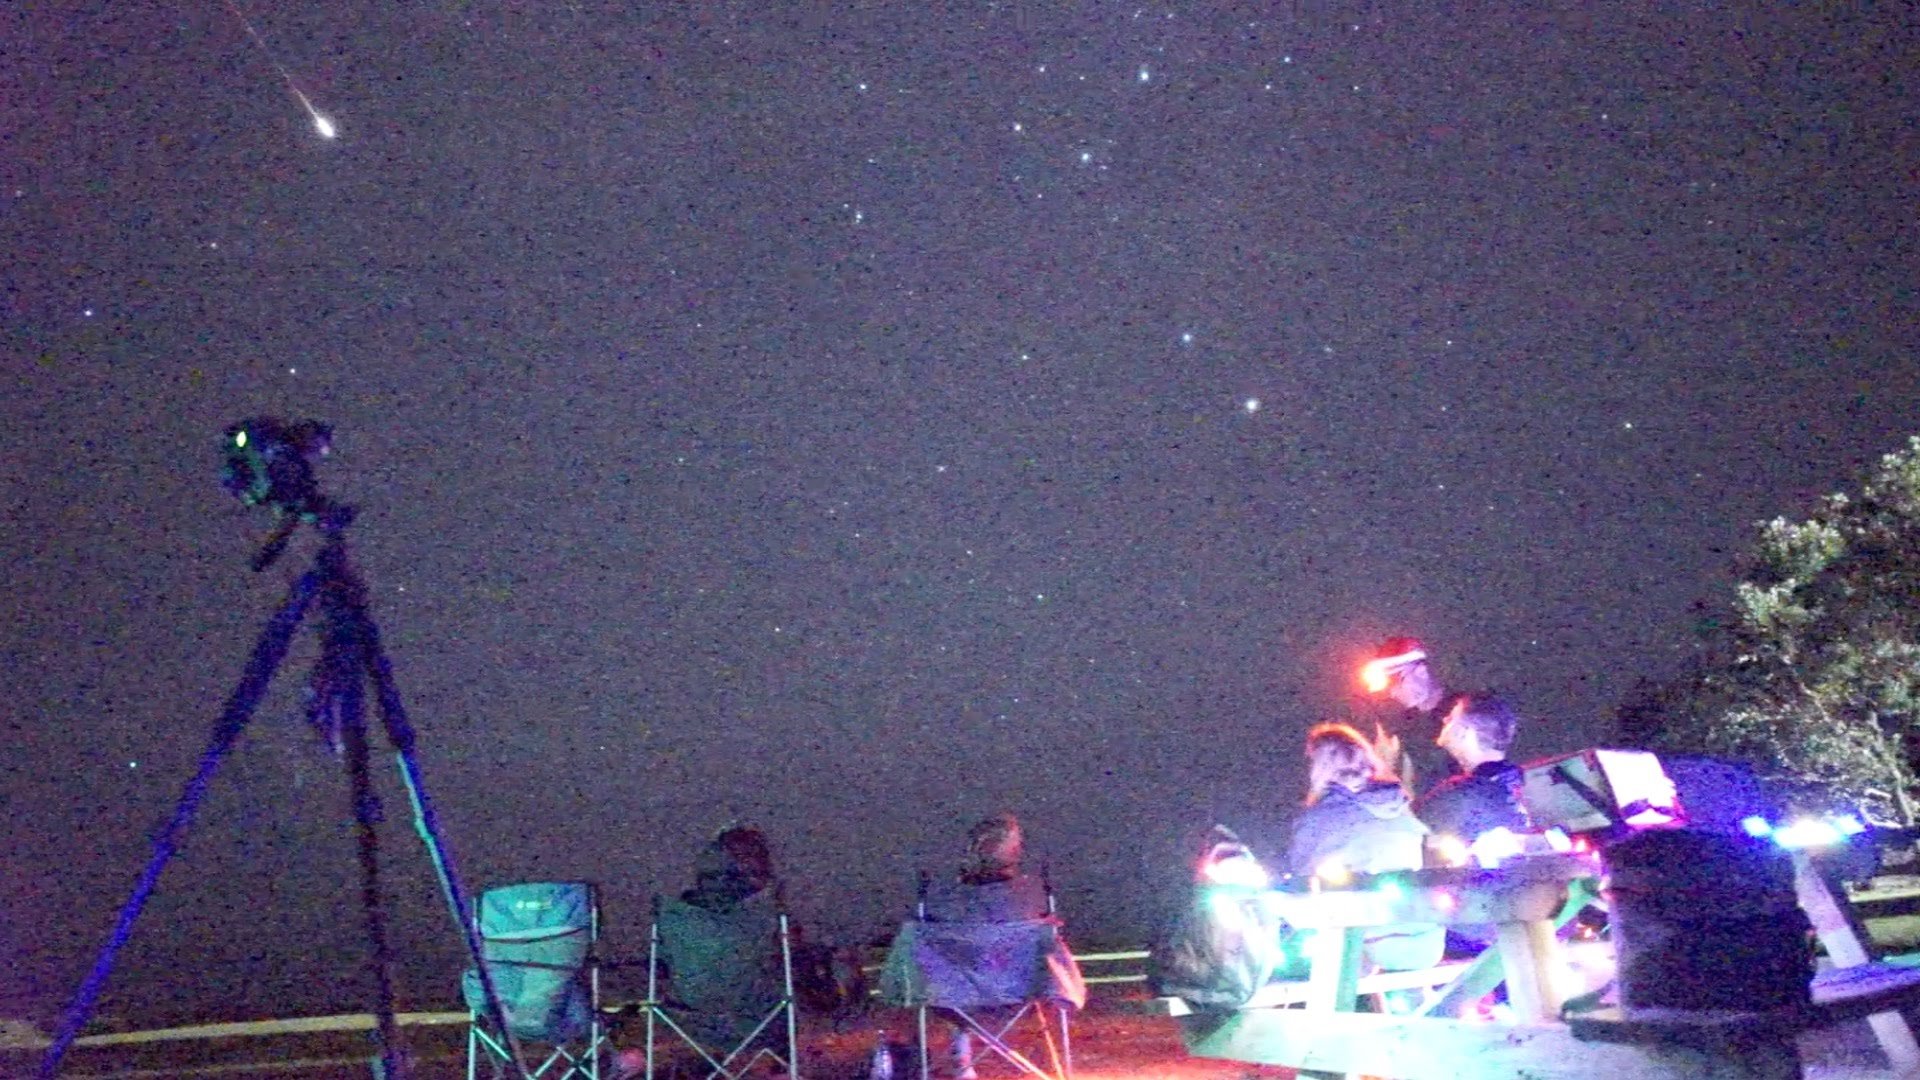 Geminid Meteor Shower fireballs 2015 